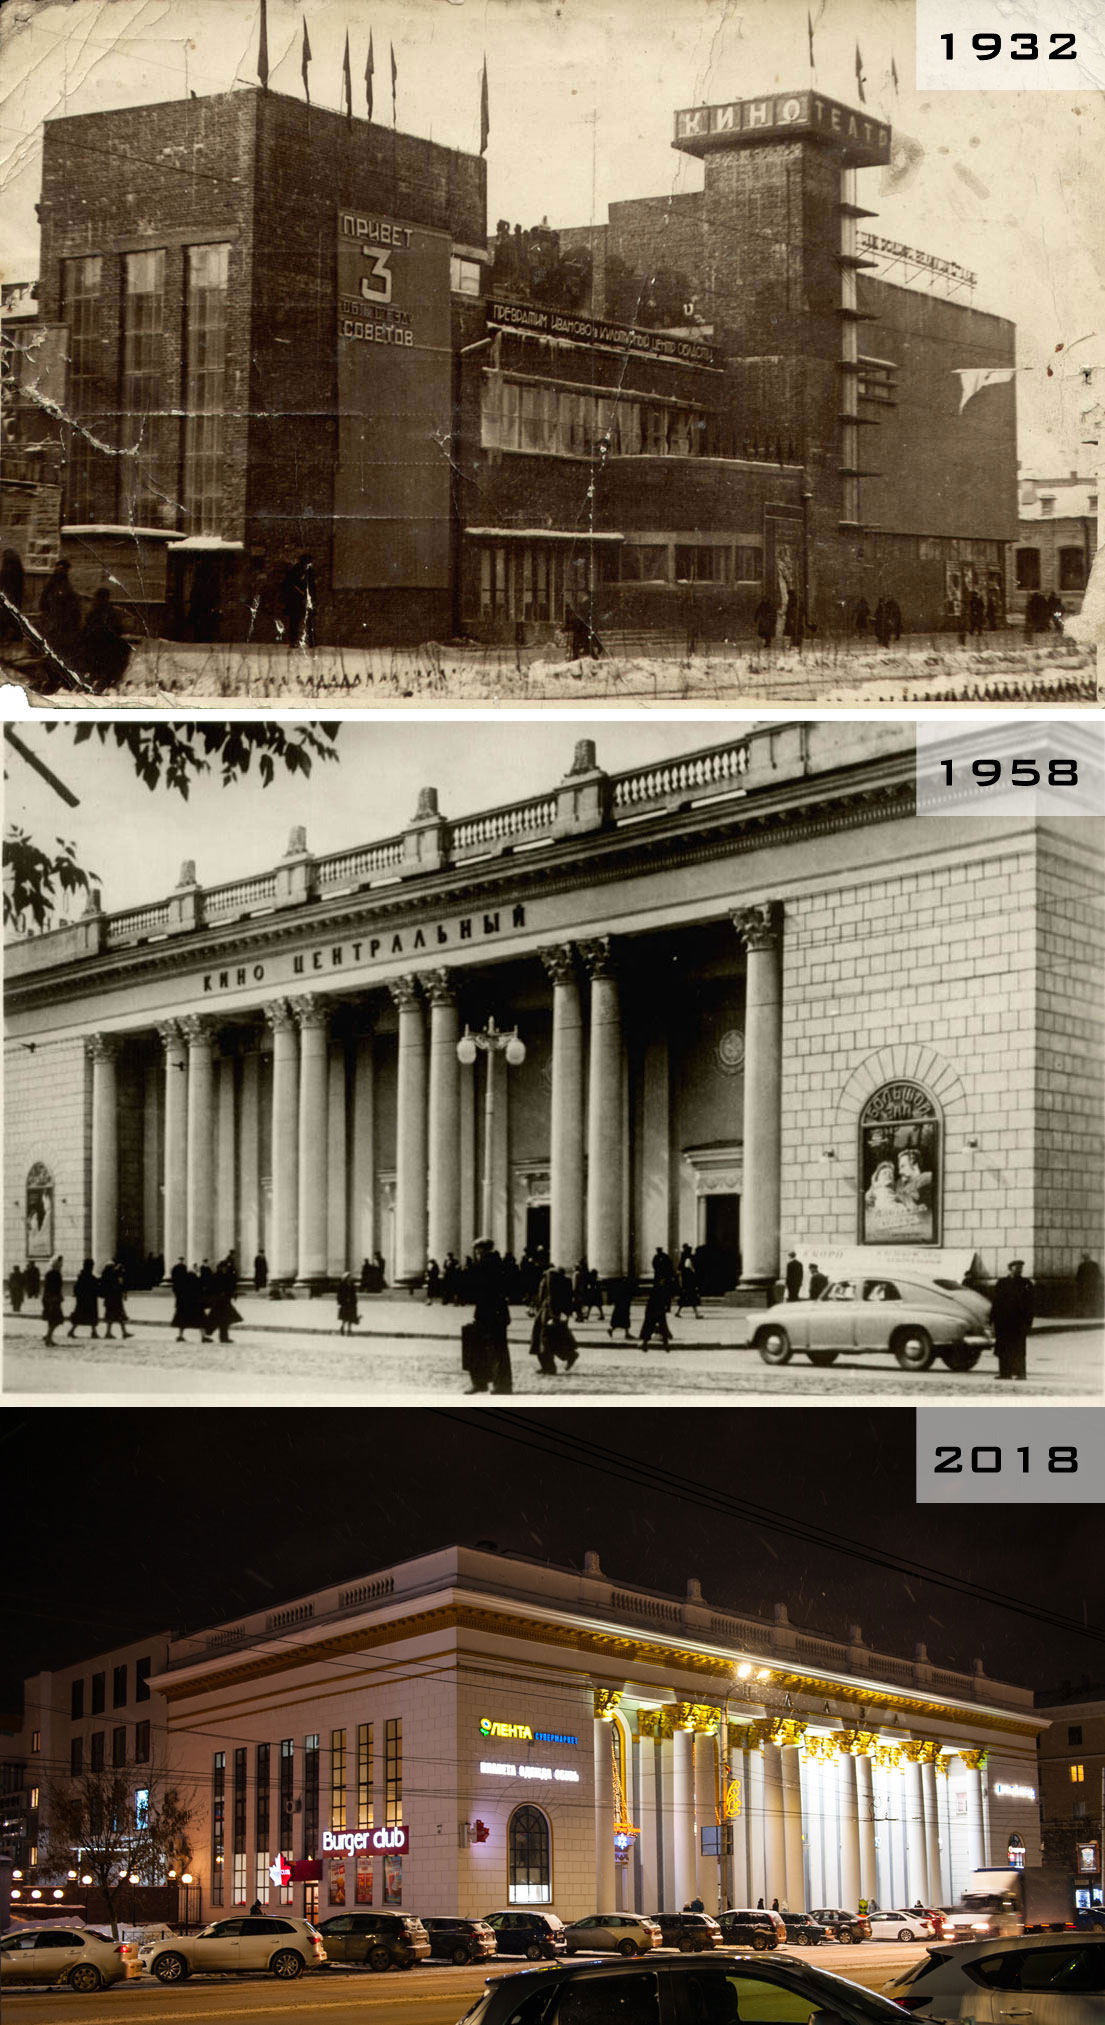 История кинотеатра «Центральный» в Иваново в фотографиях: 1932, 1958, 2018 годы